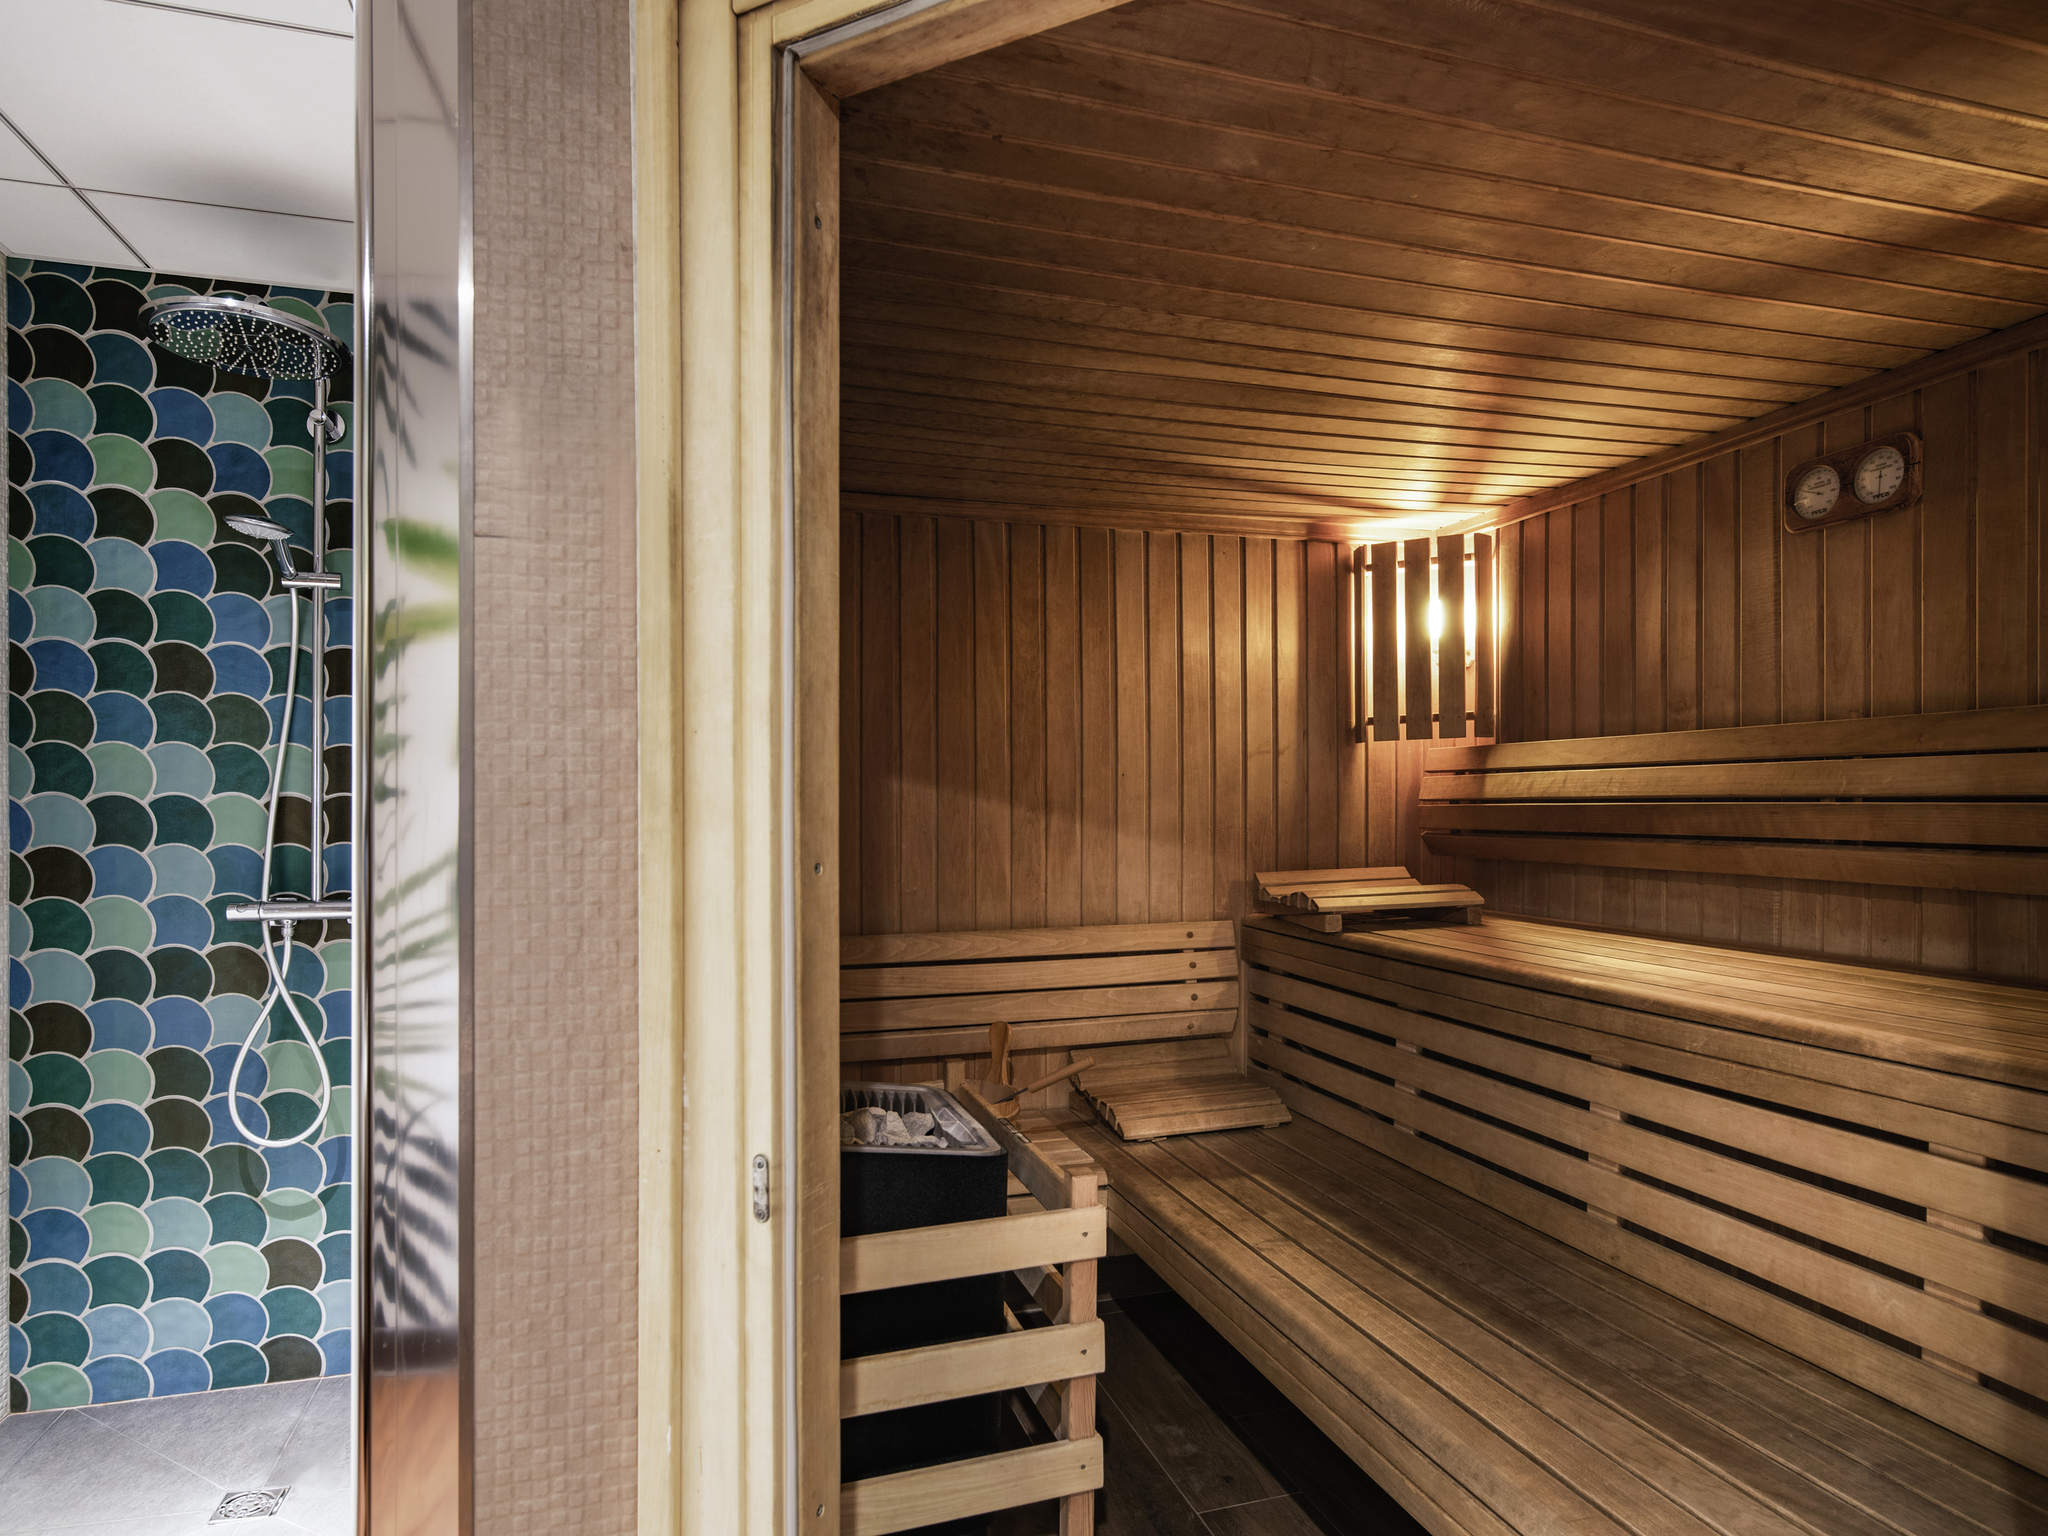 Séminaires Business Events vous présente le sauna du Mercure Hôtel Lille Aéroport